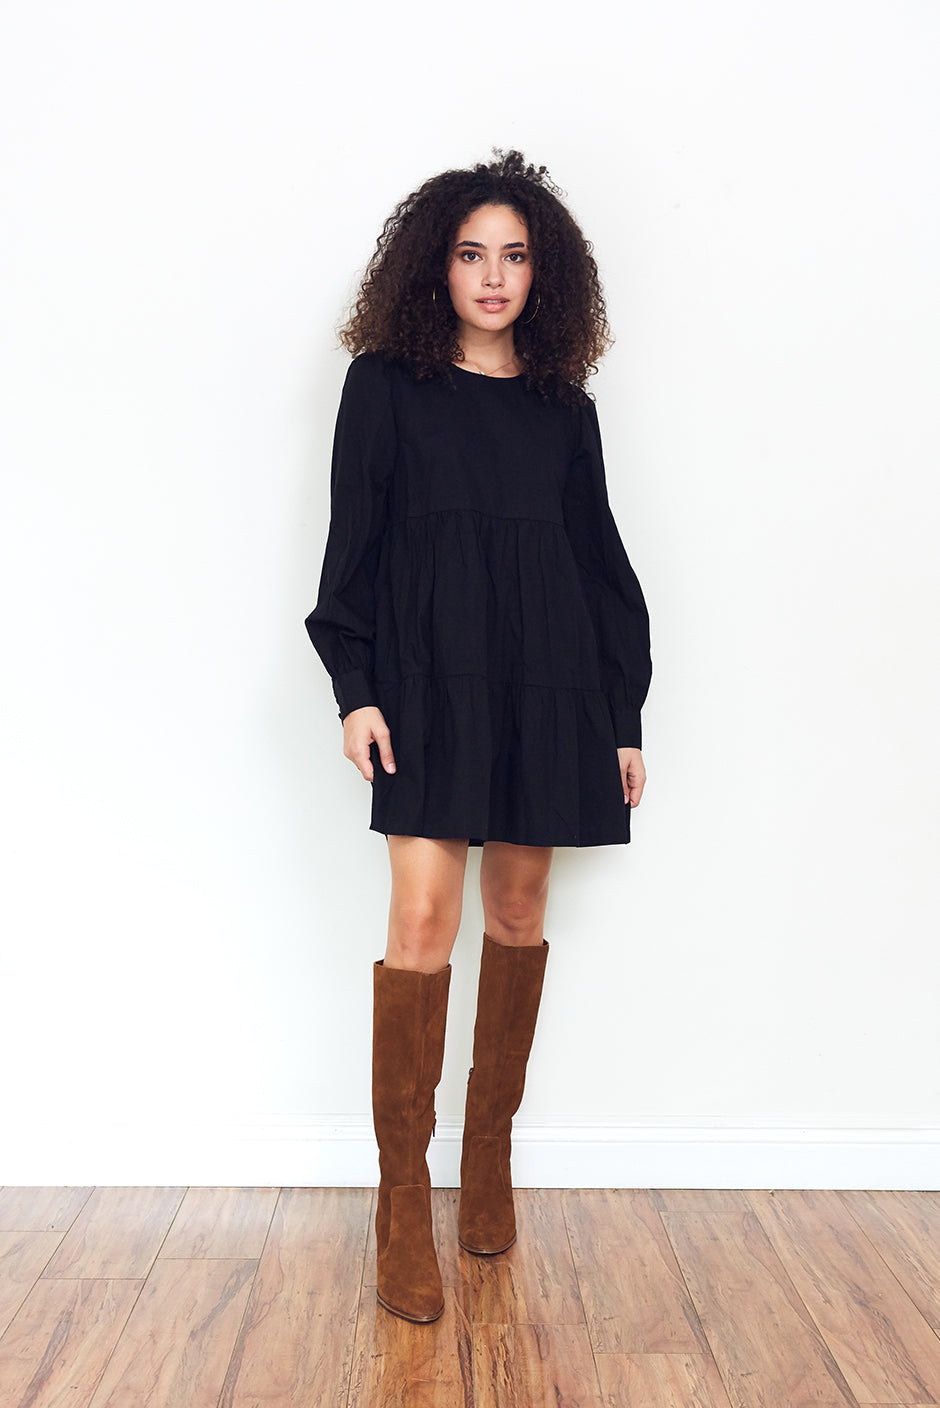 Olivia Mini Dress in Black Currant